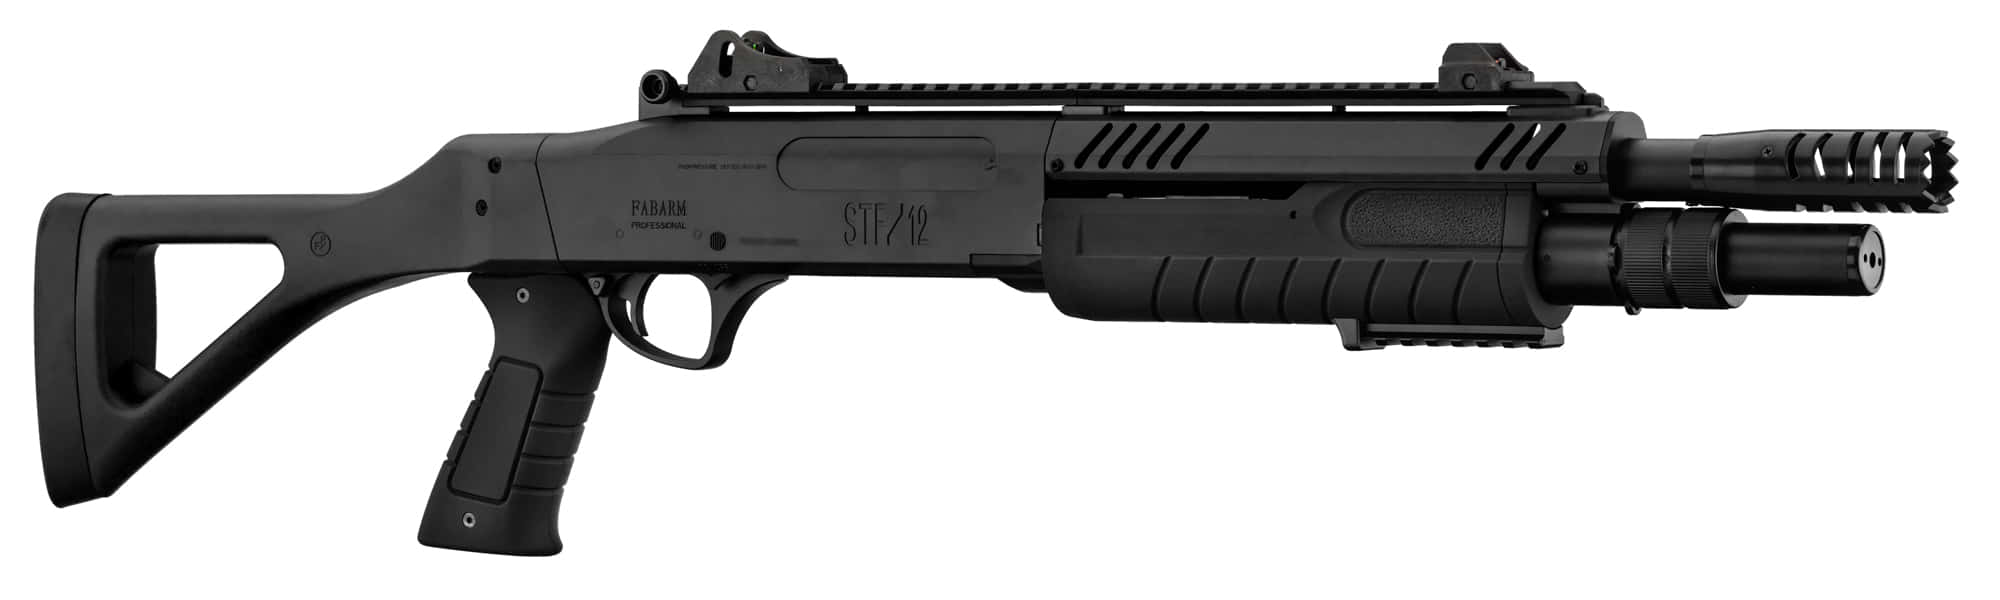 Moteur sans balai Specna Arms 34K - boutique Gunfire